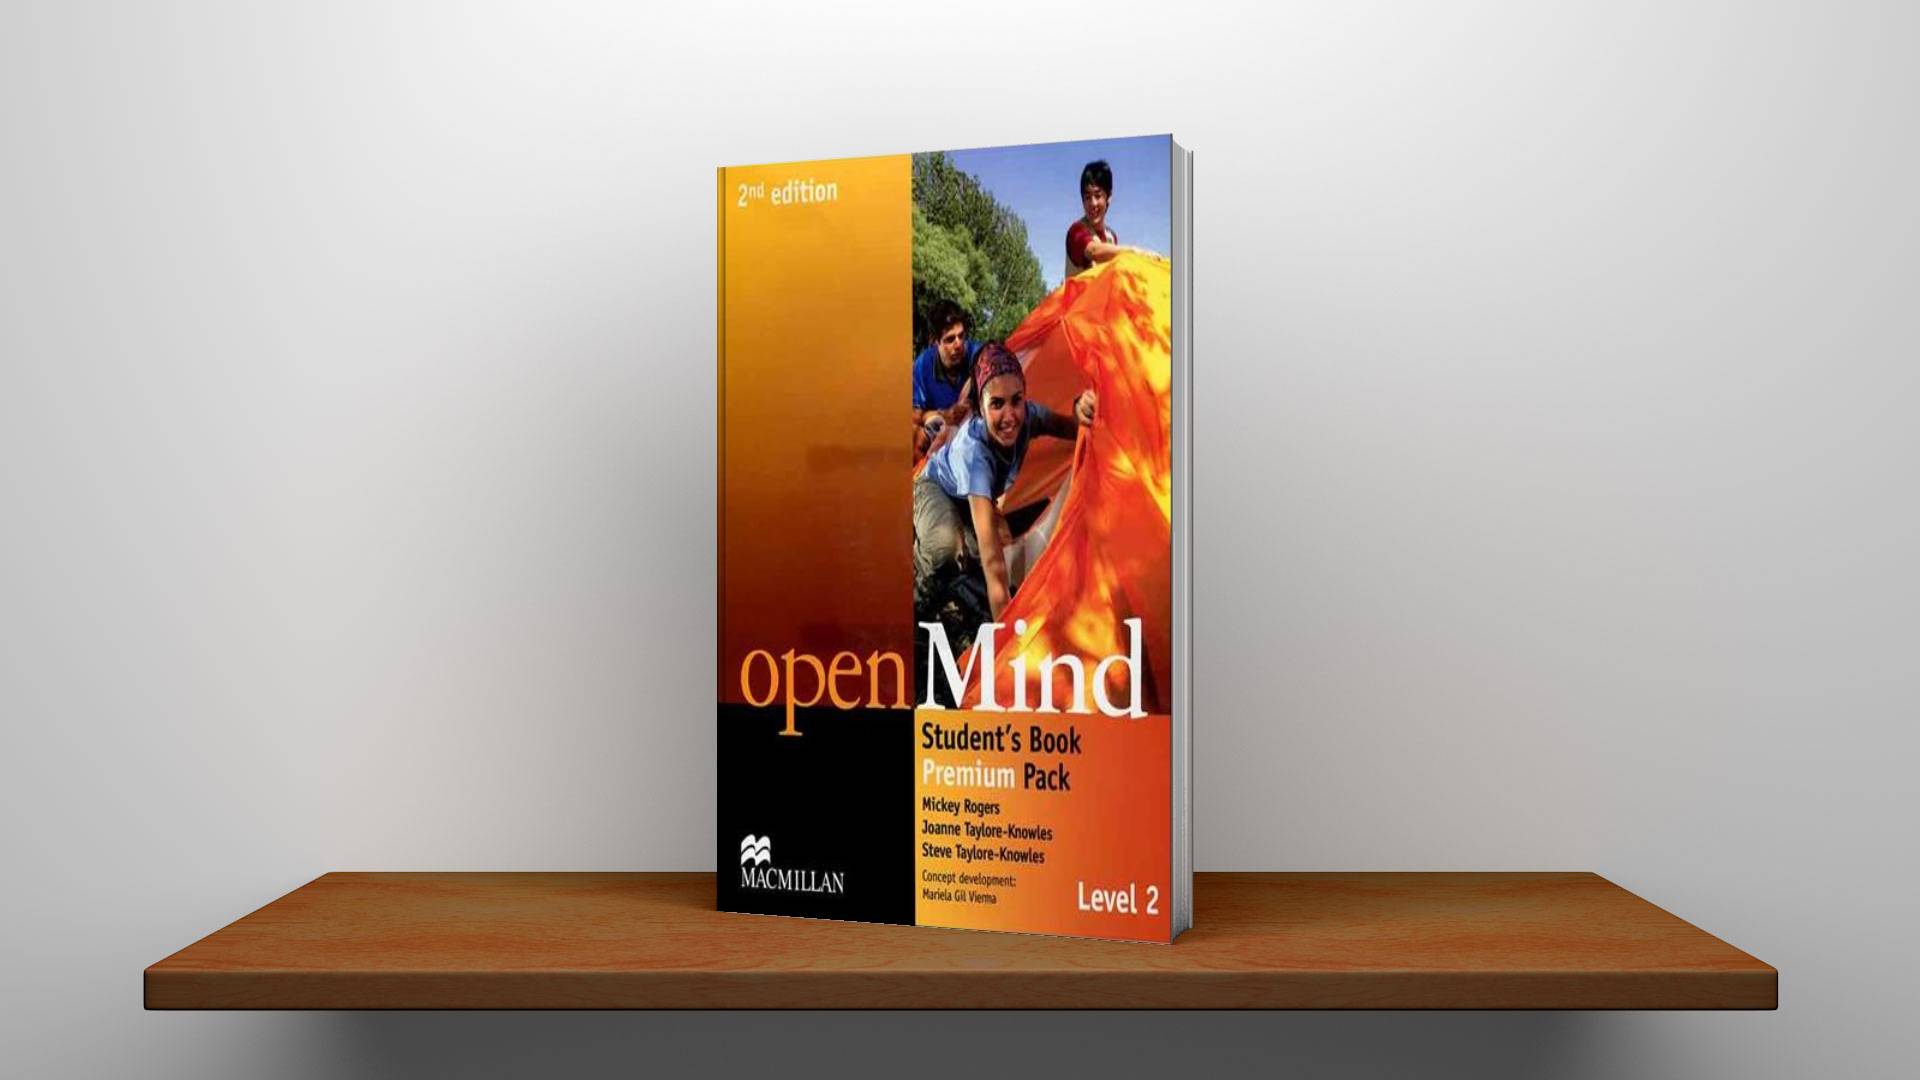 خرید کتاب زبان | کتاب زبان اصلی | openMind 2nd Edition Level 2 | اوپن مایند ویرایش دوم لول دو